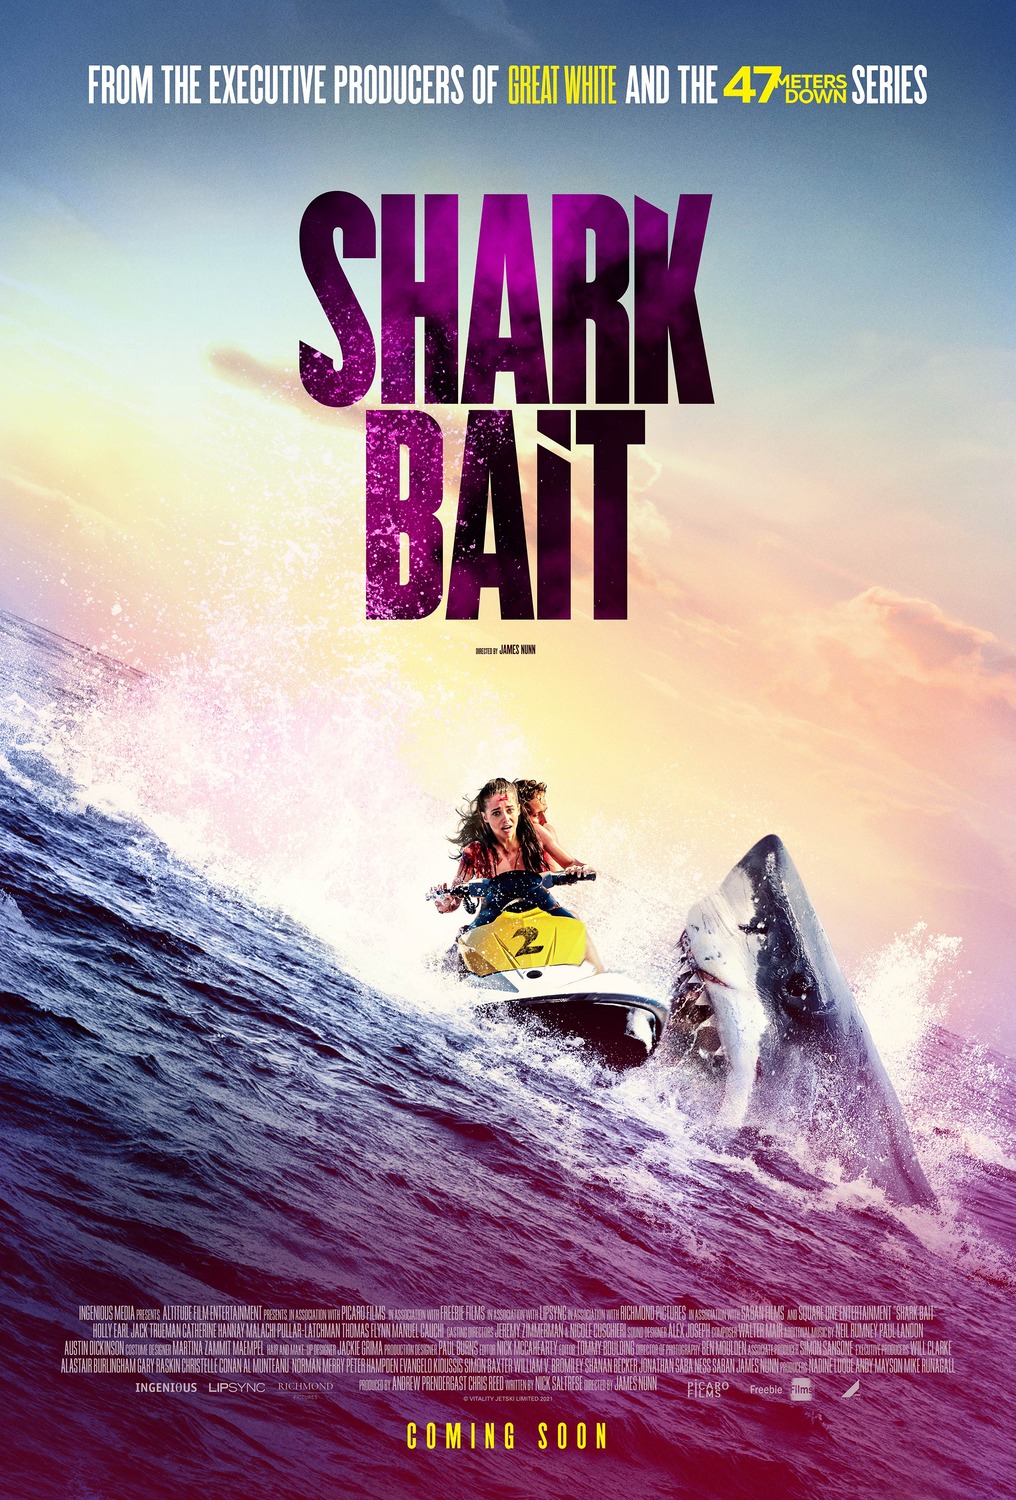 ดูหนังออนไลน์ฟรี Shark Bait (2022) ฉลามคลั่งซัมเมอร์นรก หนังเต็มเรื่อง หนังมาสเตอร์ ดูหนังHD ดูหนังออนไลน์ ดูหนังใหม่